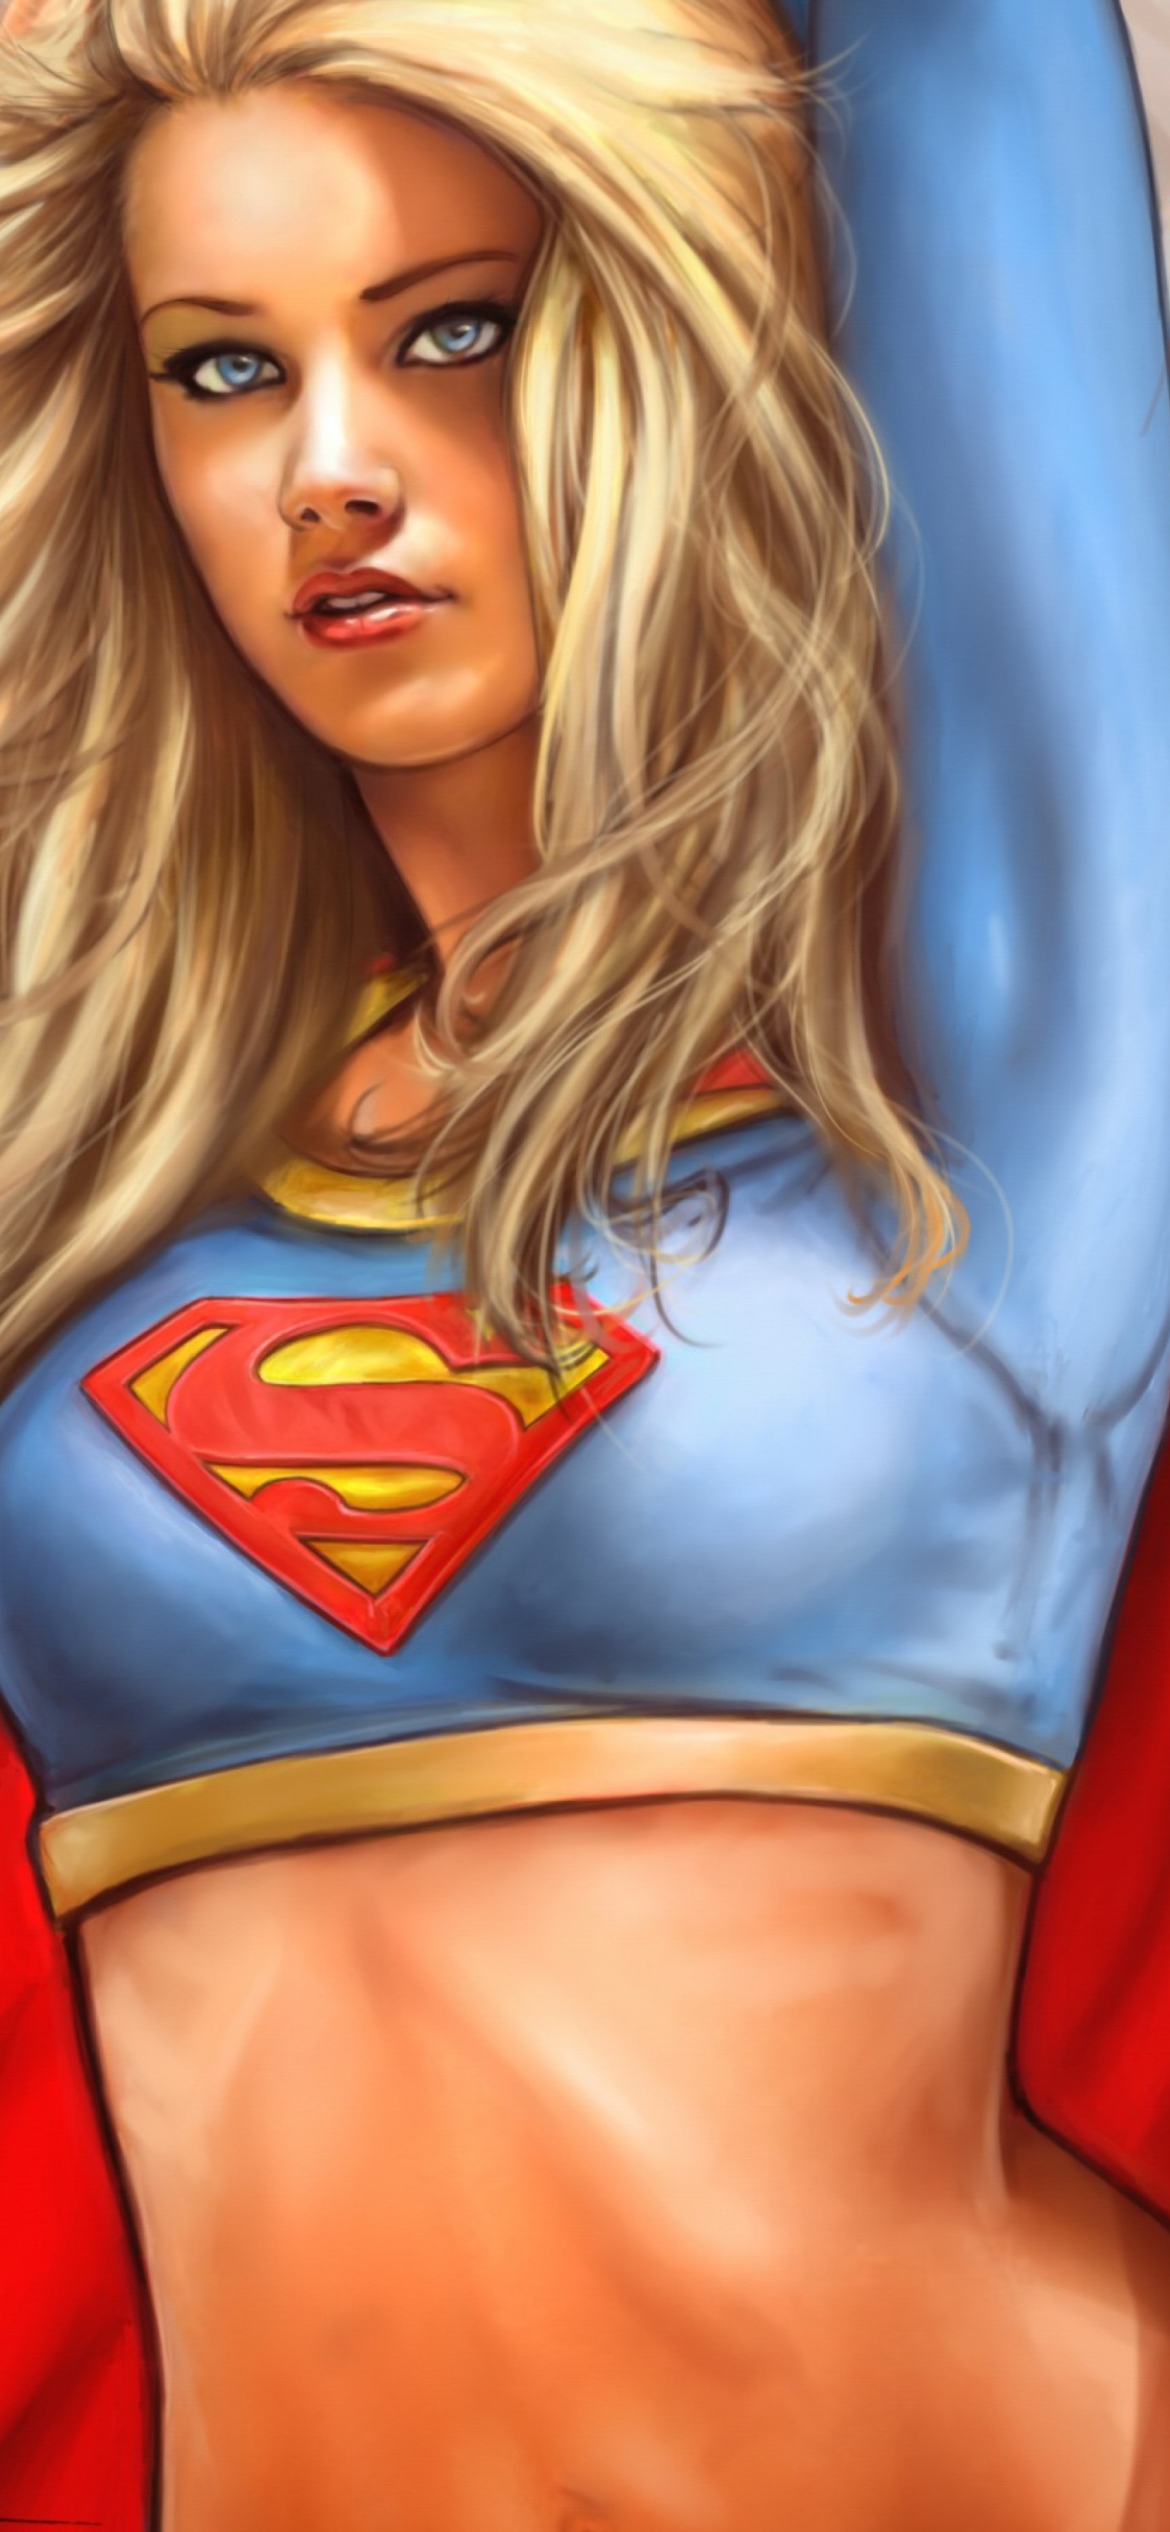 Обои Marvel Supergirl DC Comics 1170x2532